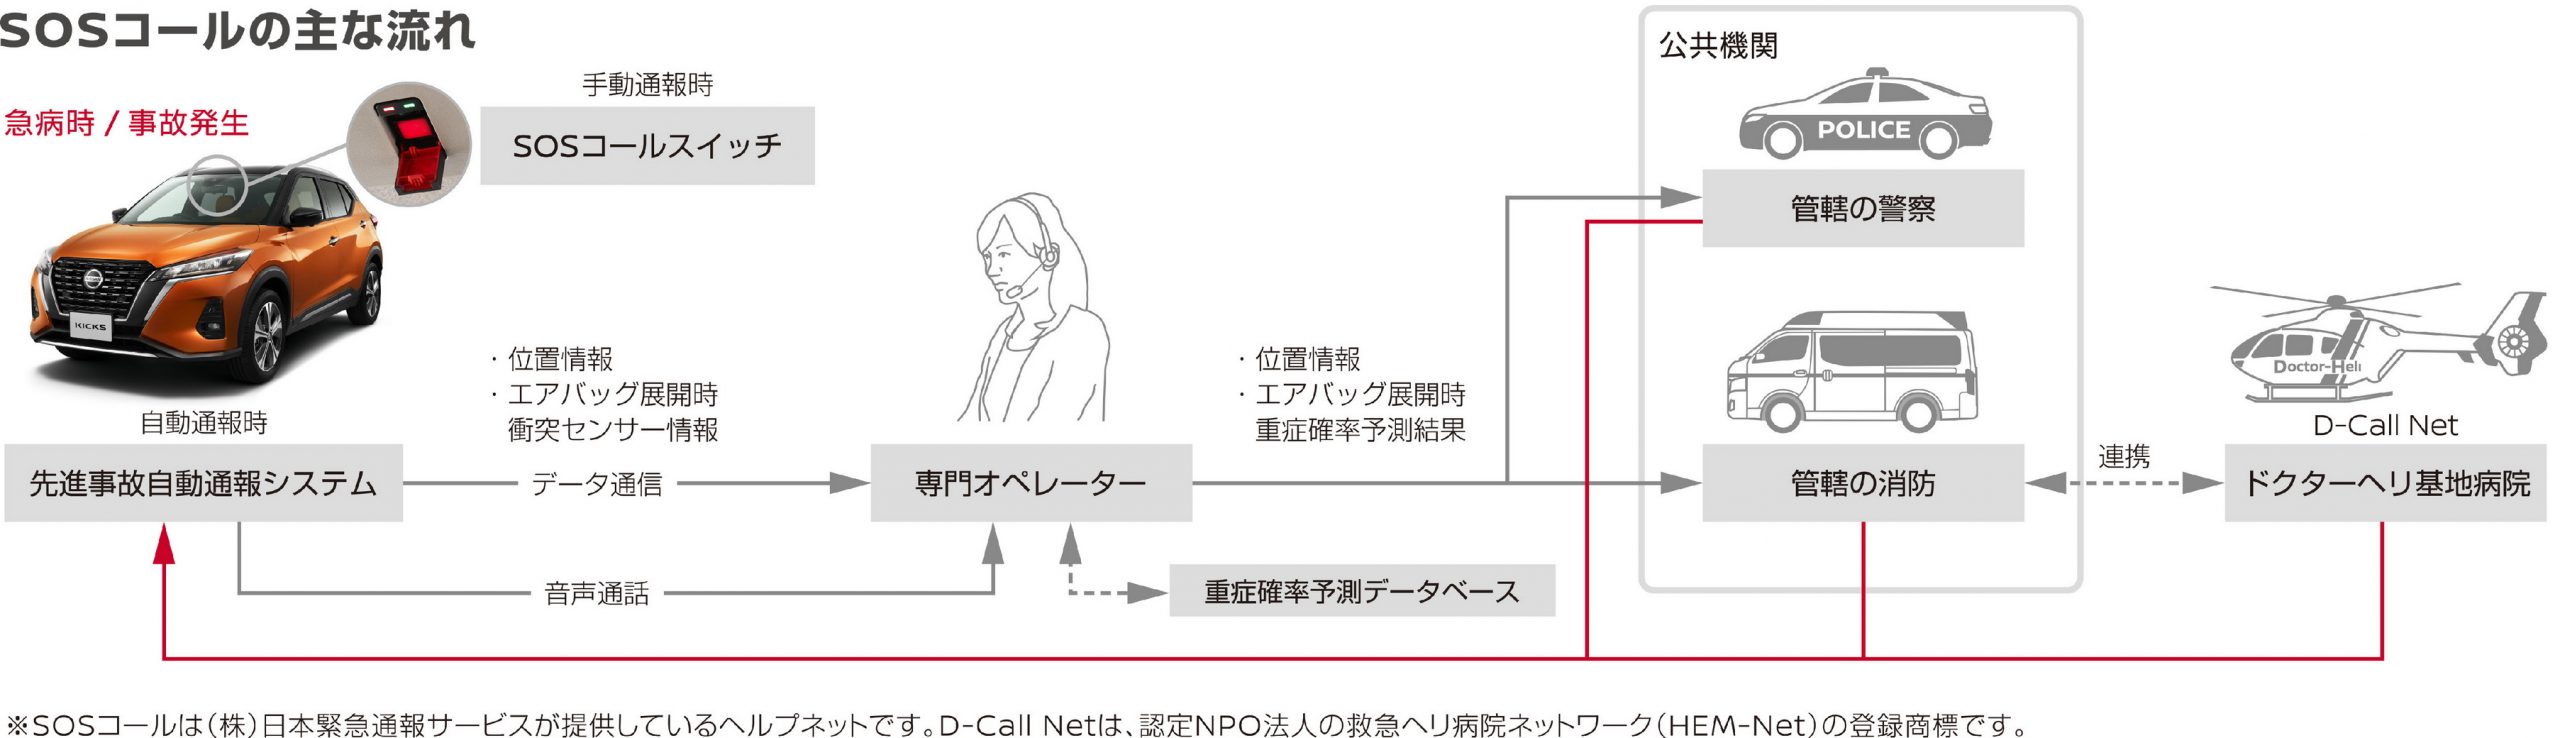 نيسان كيكس 2021 تدشن في اليابان "صور وتفاصيل جديدة" 9